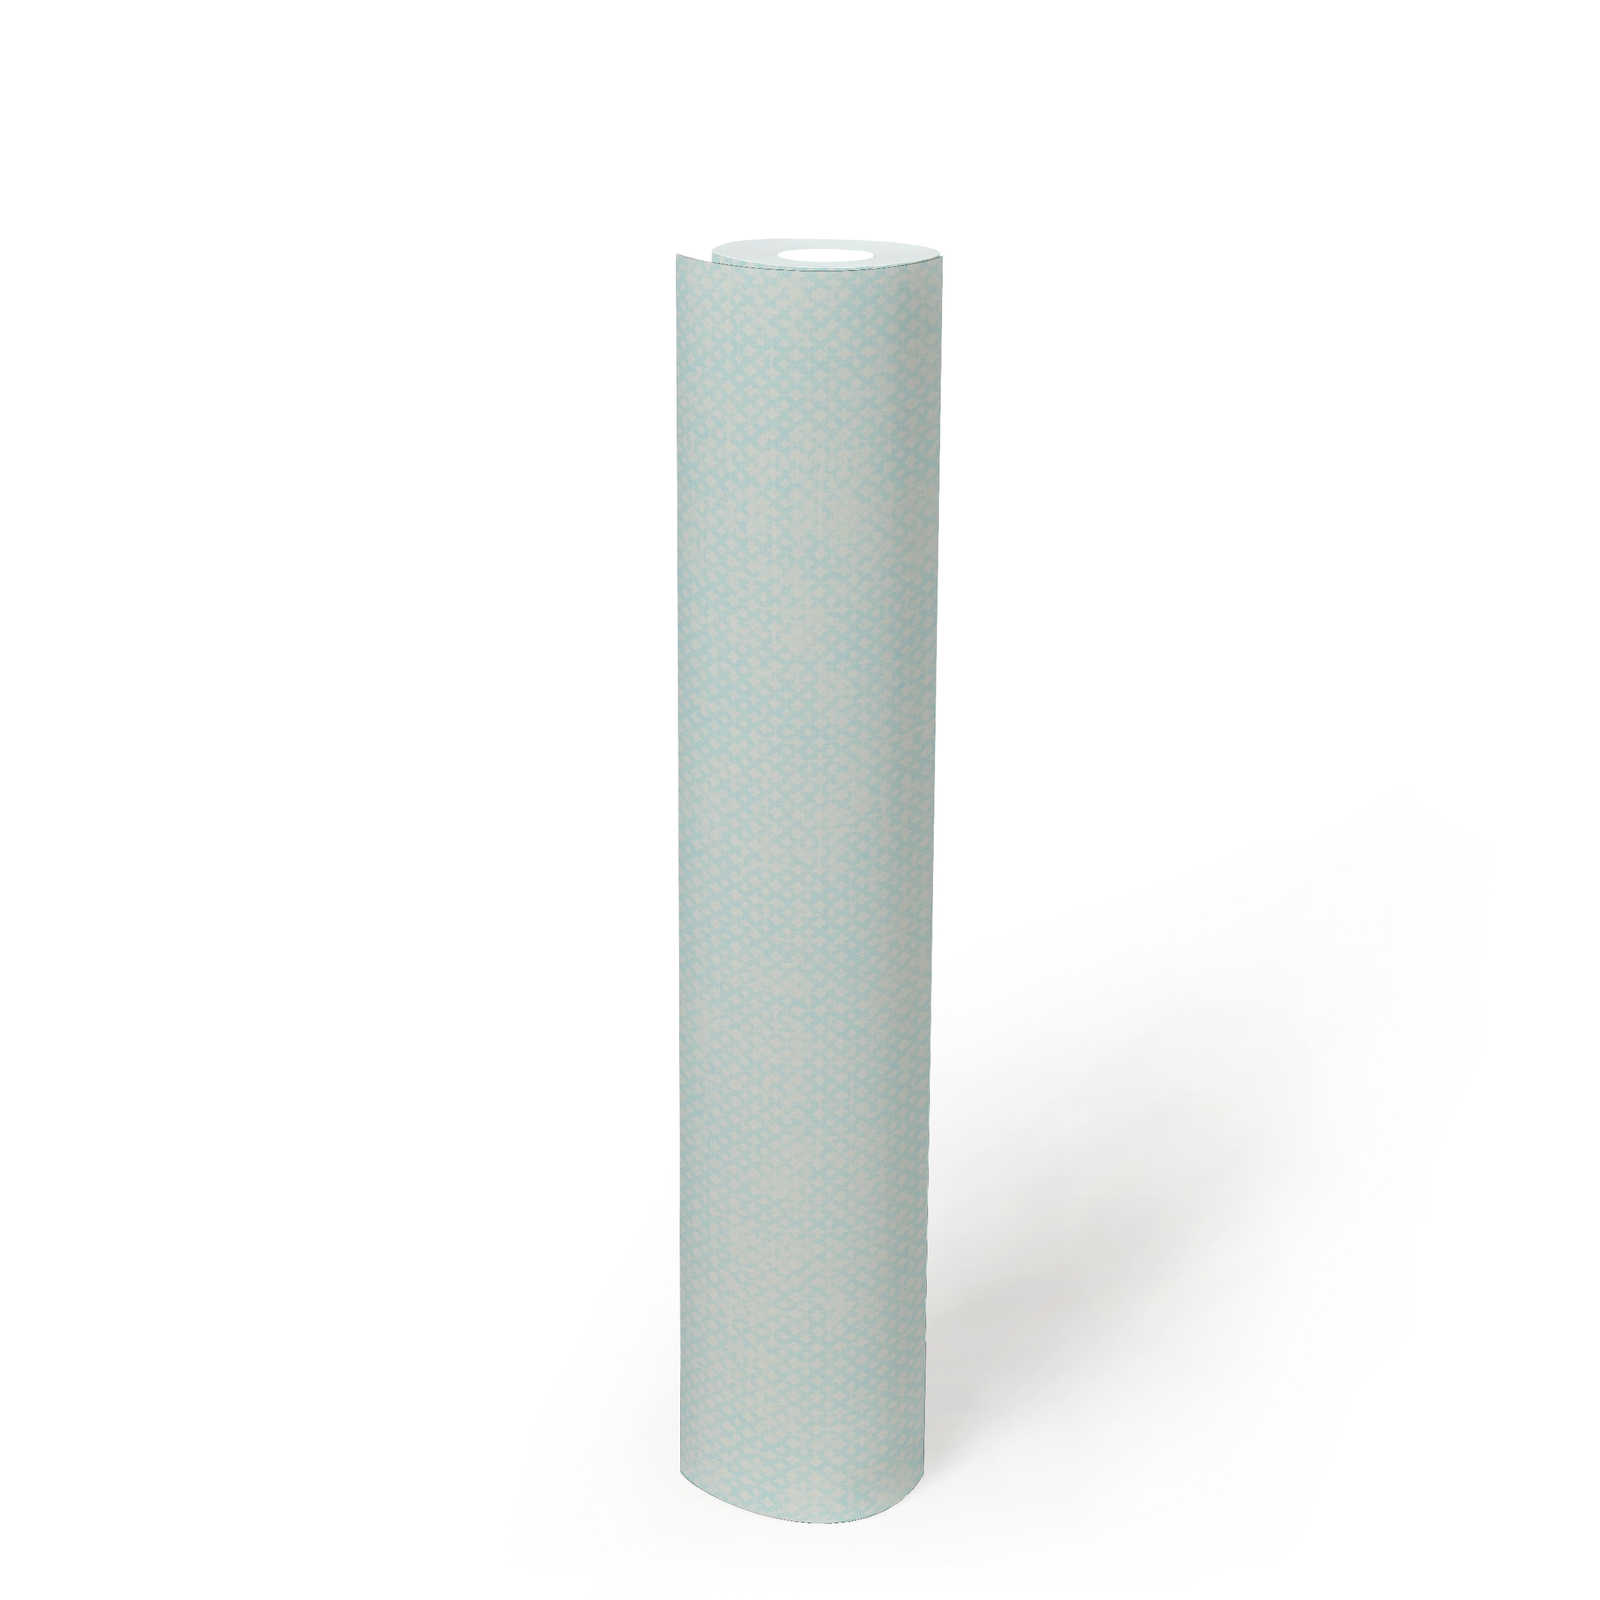             Papel pintado no tejido con textura fina - azul, blanco
        